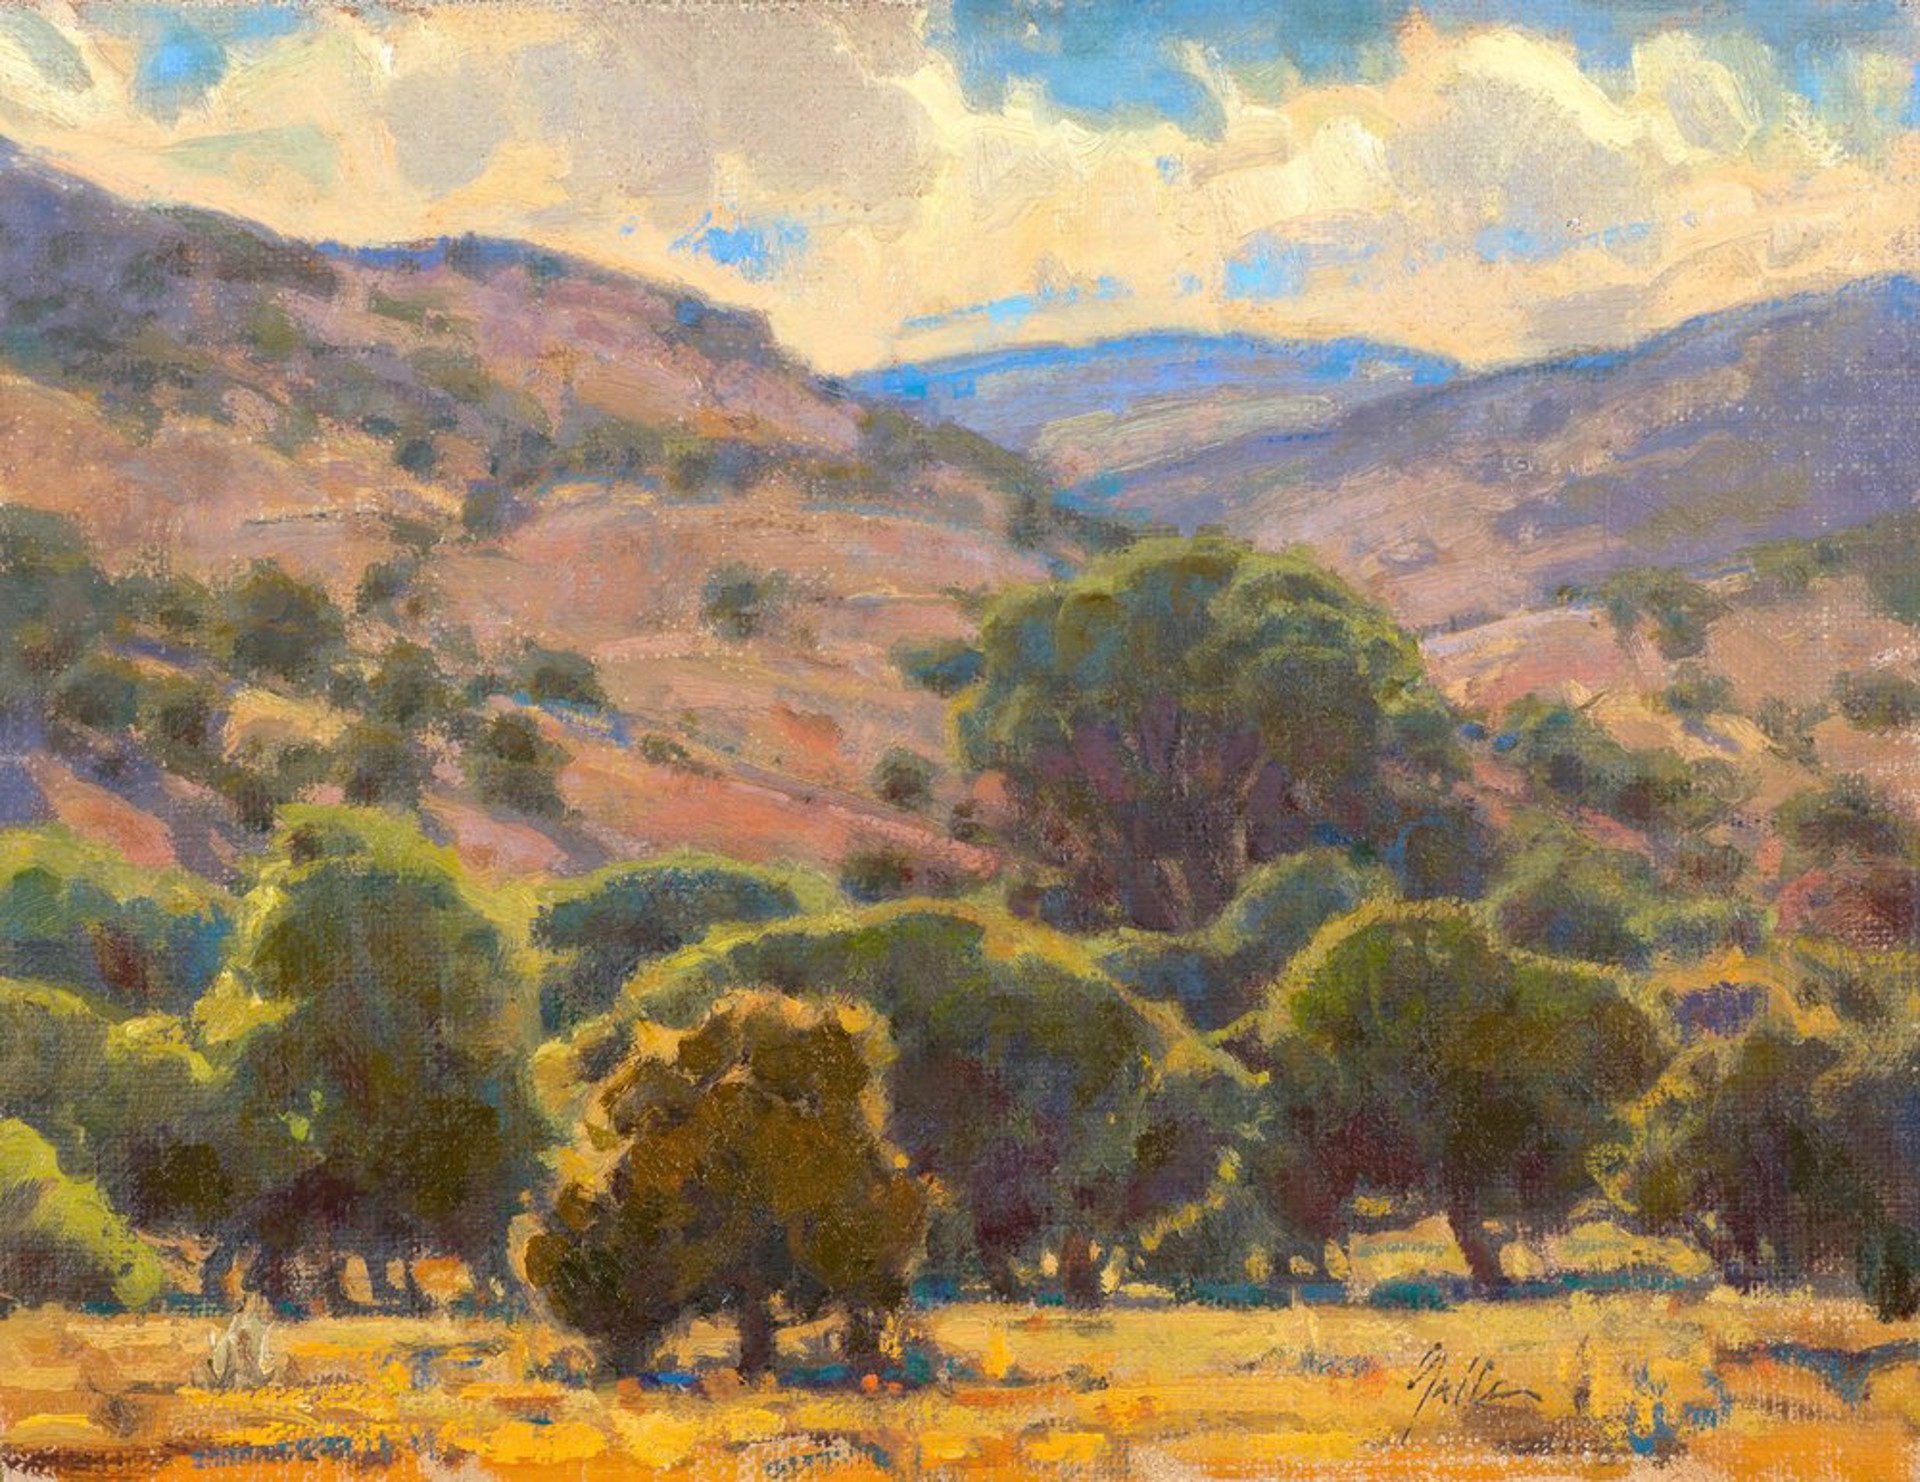 Arid Hills by Bill Gallen